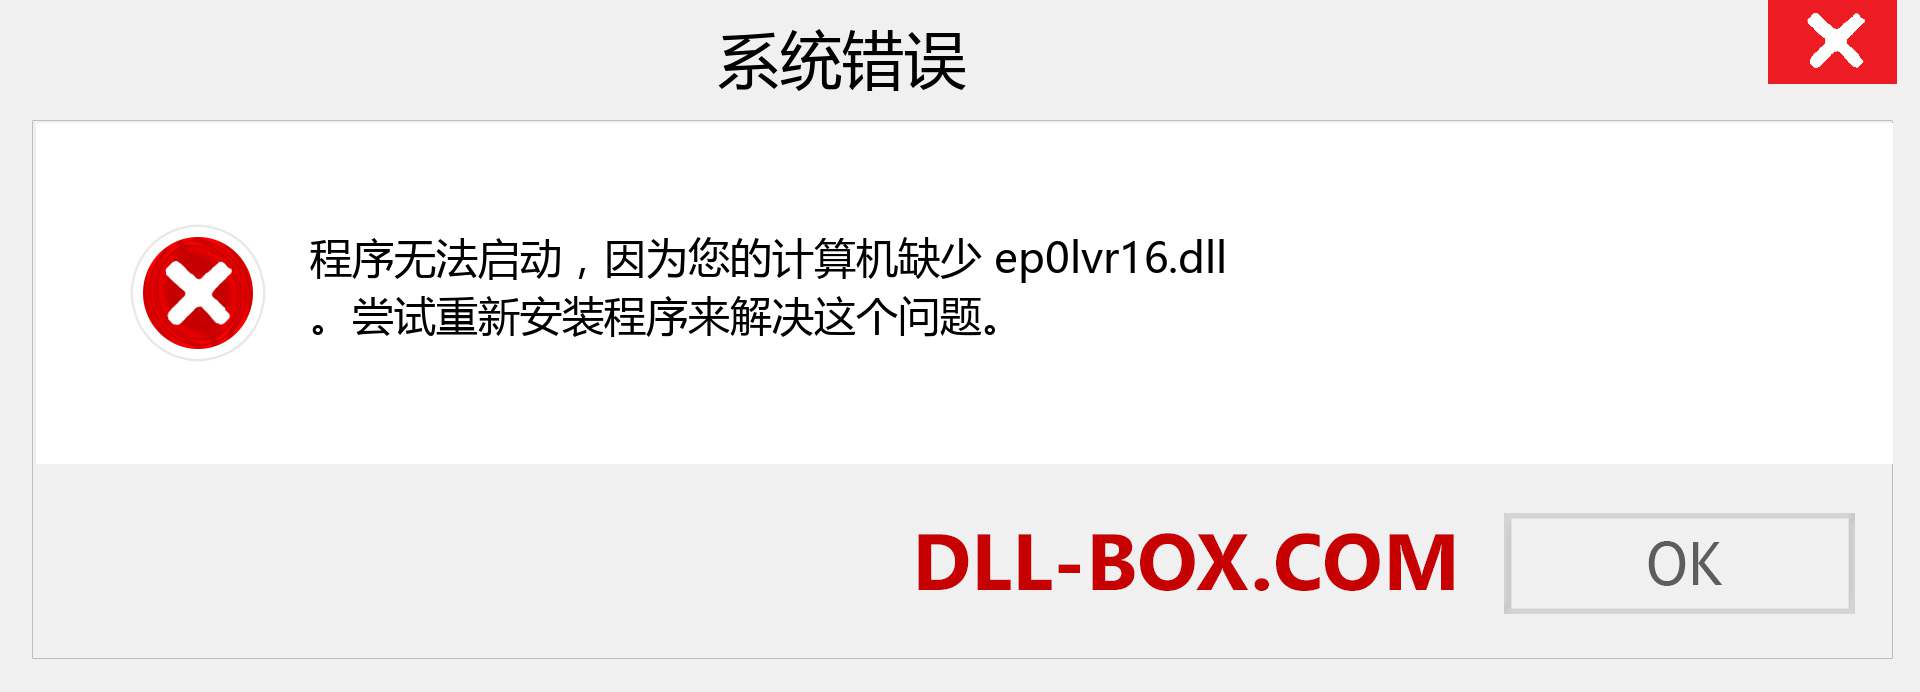 ep0lvr16.dll 文件丢失？。 适用于 Windows 7、8、10 的下载 - 修复 Windows、照片、图像上的 ep0lvr16 dll 丢失错误